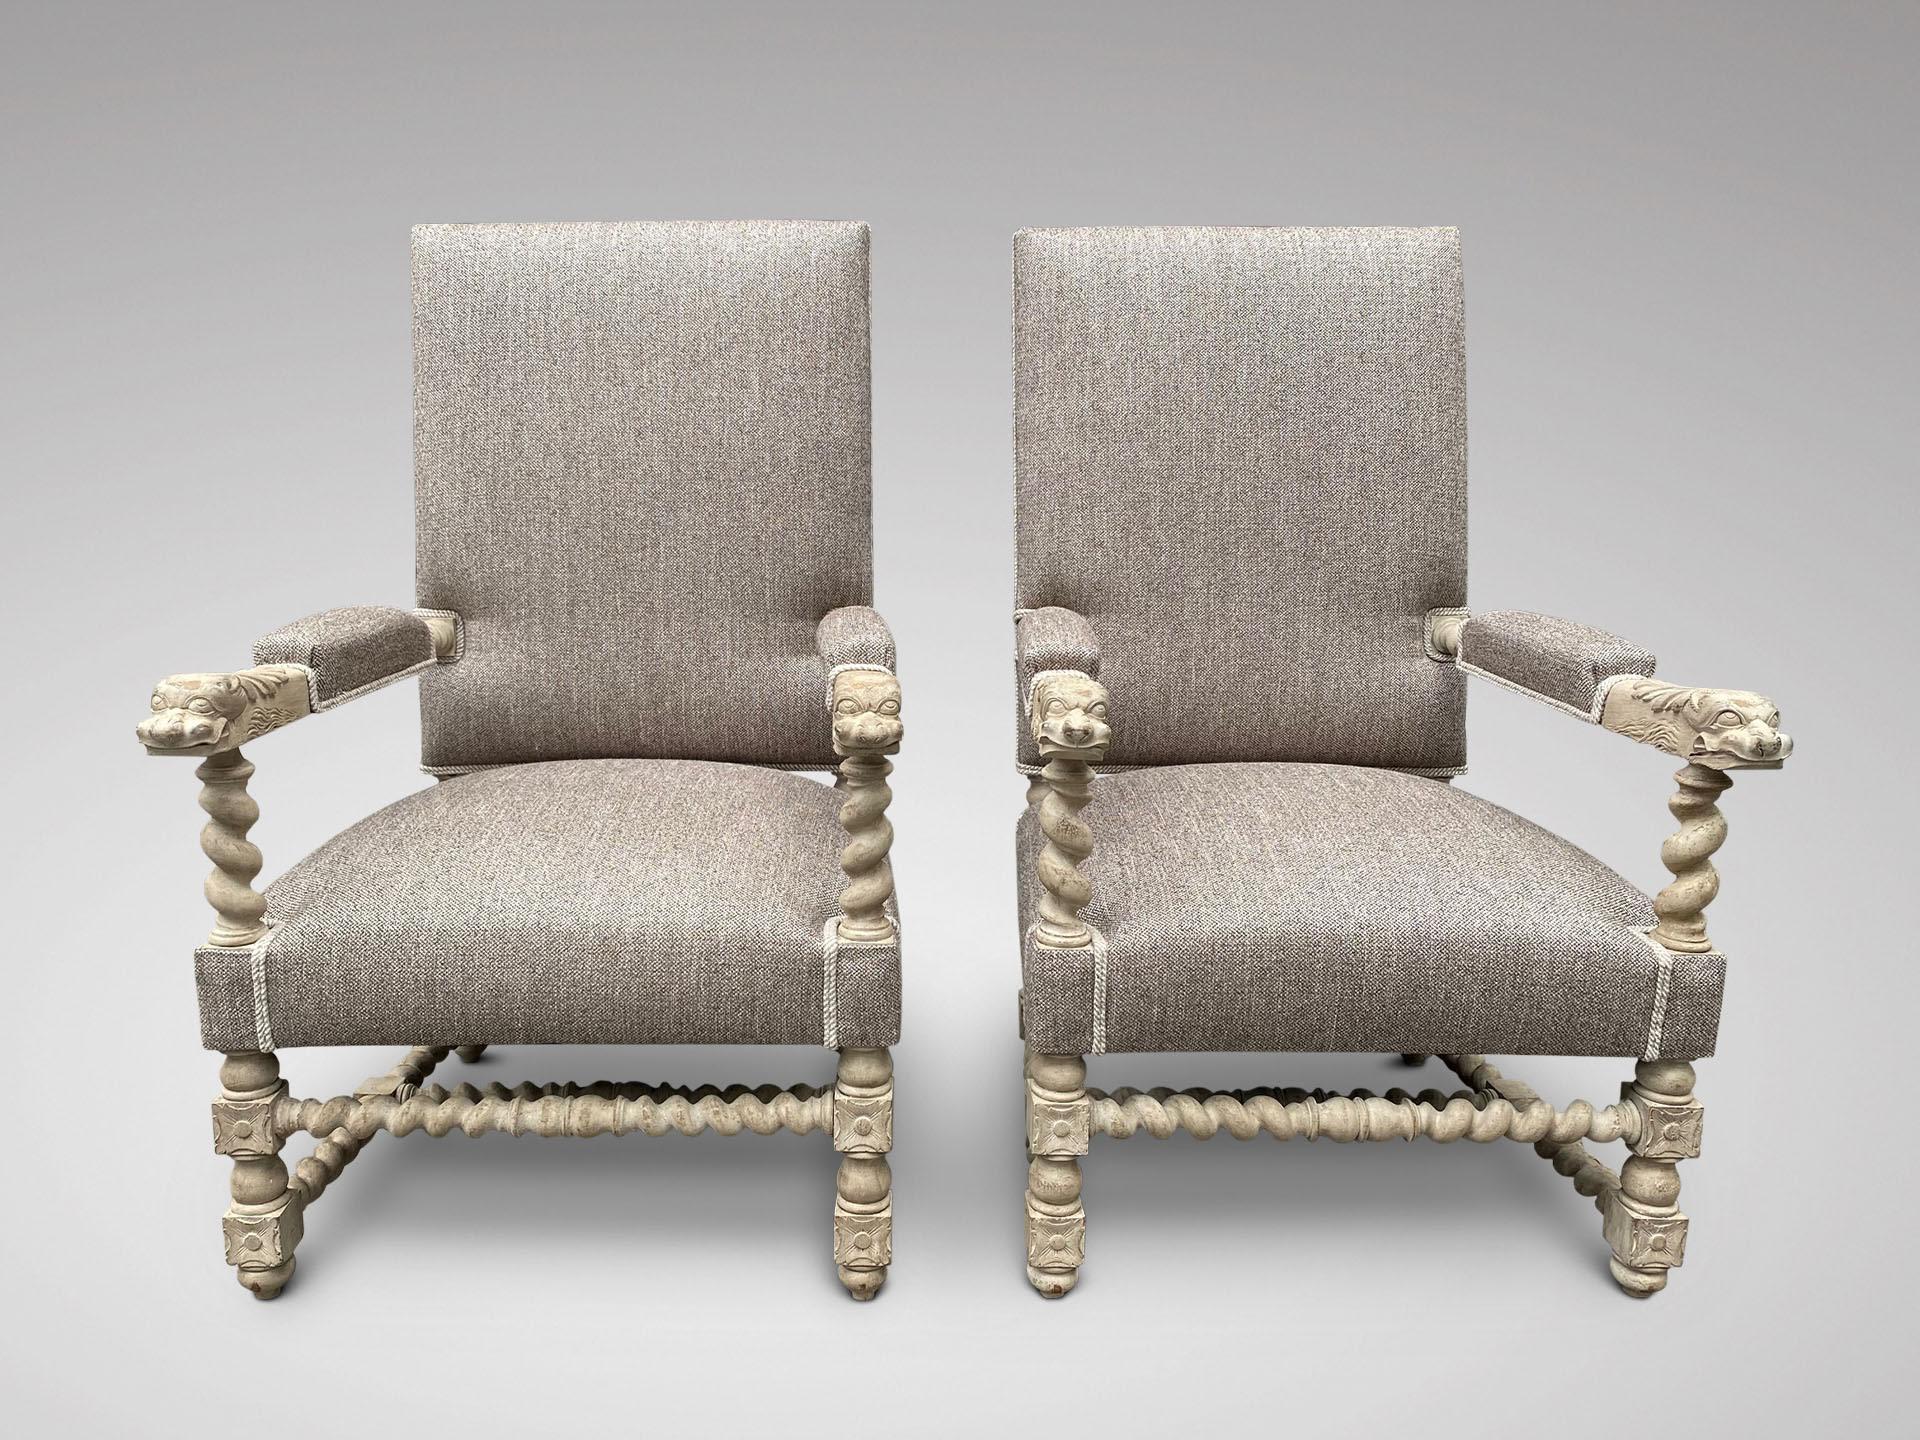 Paire de fauteuils anciens de style Louis XVI, de grande qualité, en noyer français, sculptés et rembourrés. Le dossier et l'assise sont rembourrés et reliés à des bras à tête de lion sculptés sous des supports en torsion d'orge et une base de